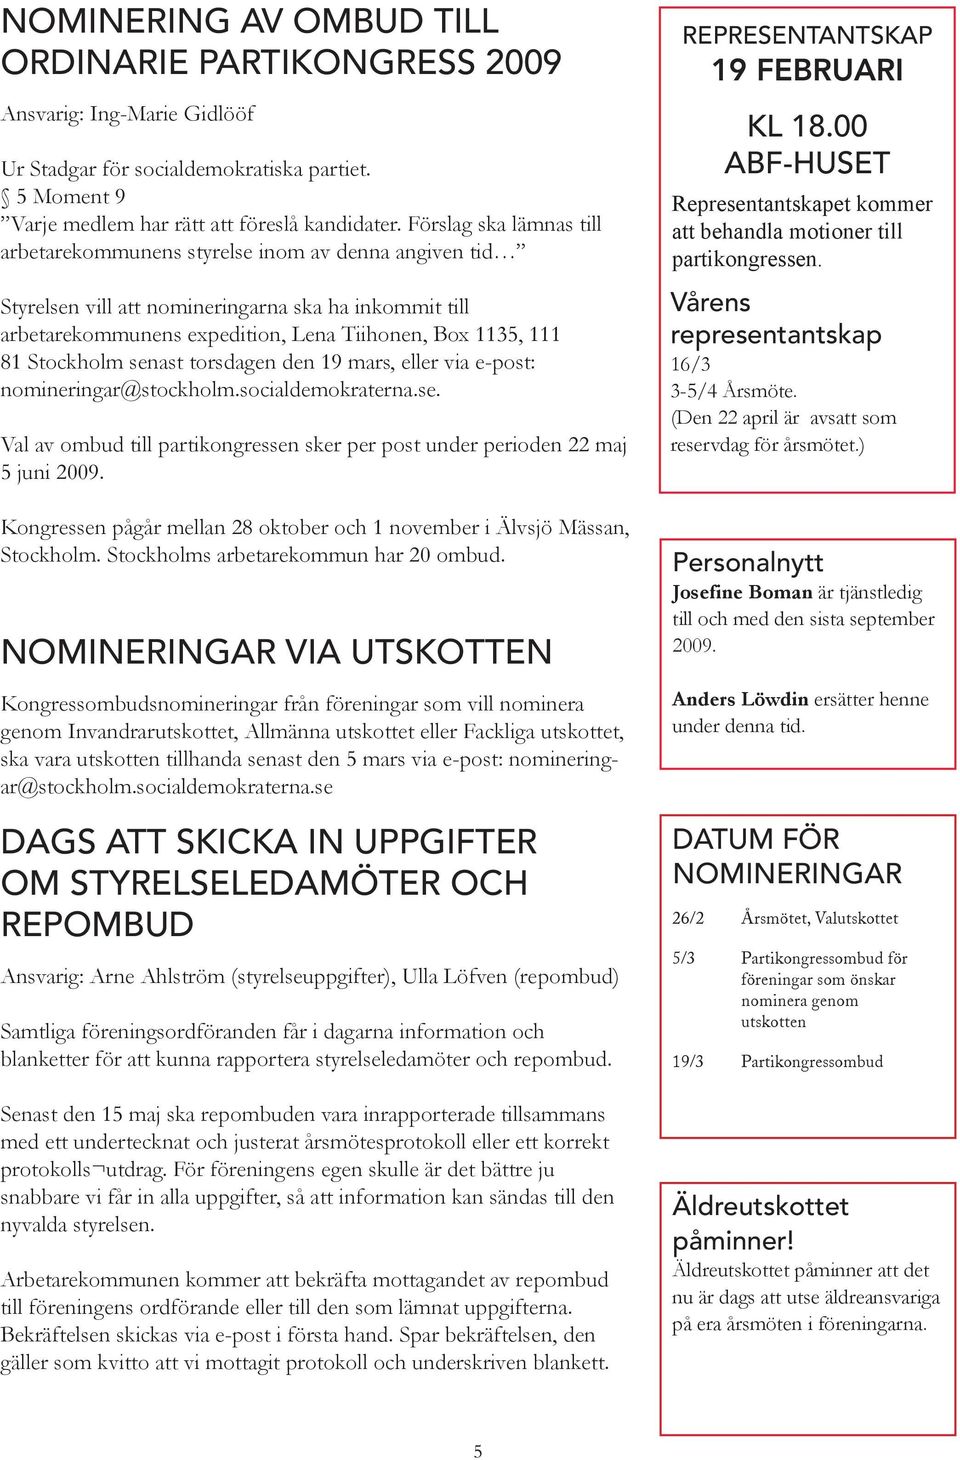 Stockholm senast torsdagen den 19 mars, eller via e-post: nomineringar@stockholm.socialdemokraterna.se. Val av ombud till partikongressen sker per post under perioden 22 maj 5 juni 2009.